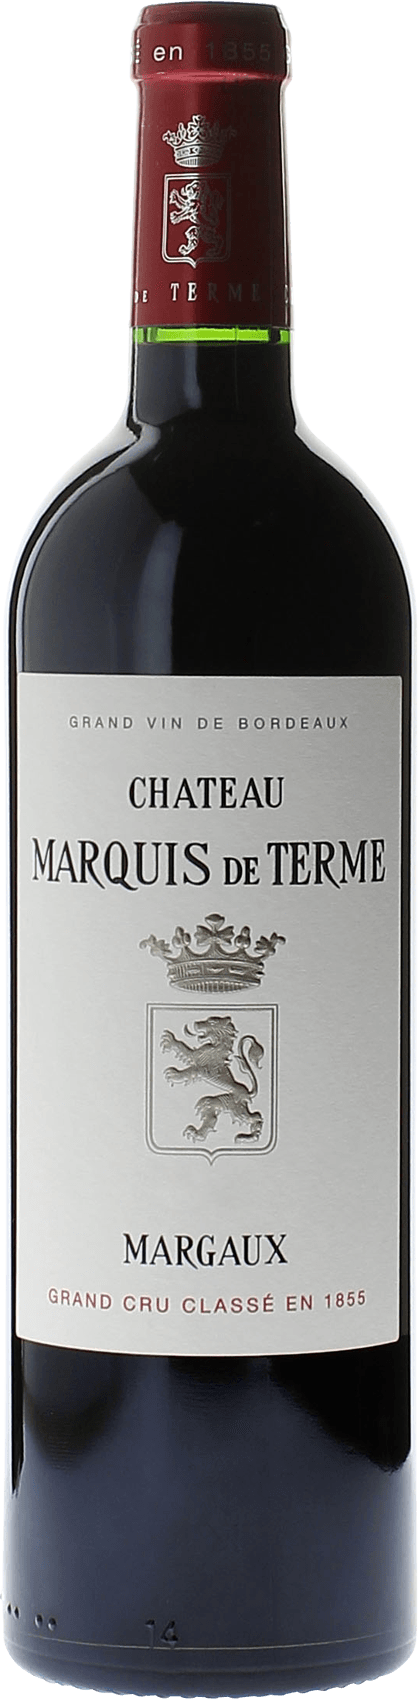 Marquis de terme 1991 4me Grand cru class Margaux, Bordeaux rouge